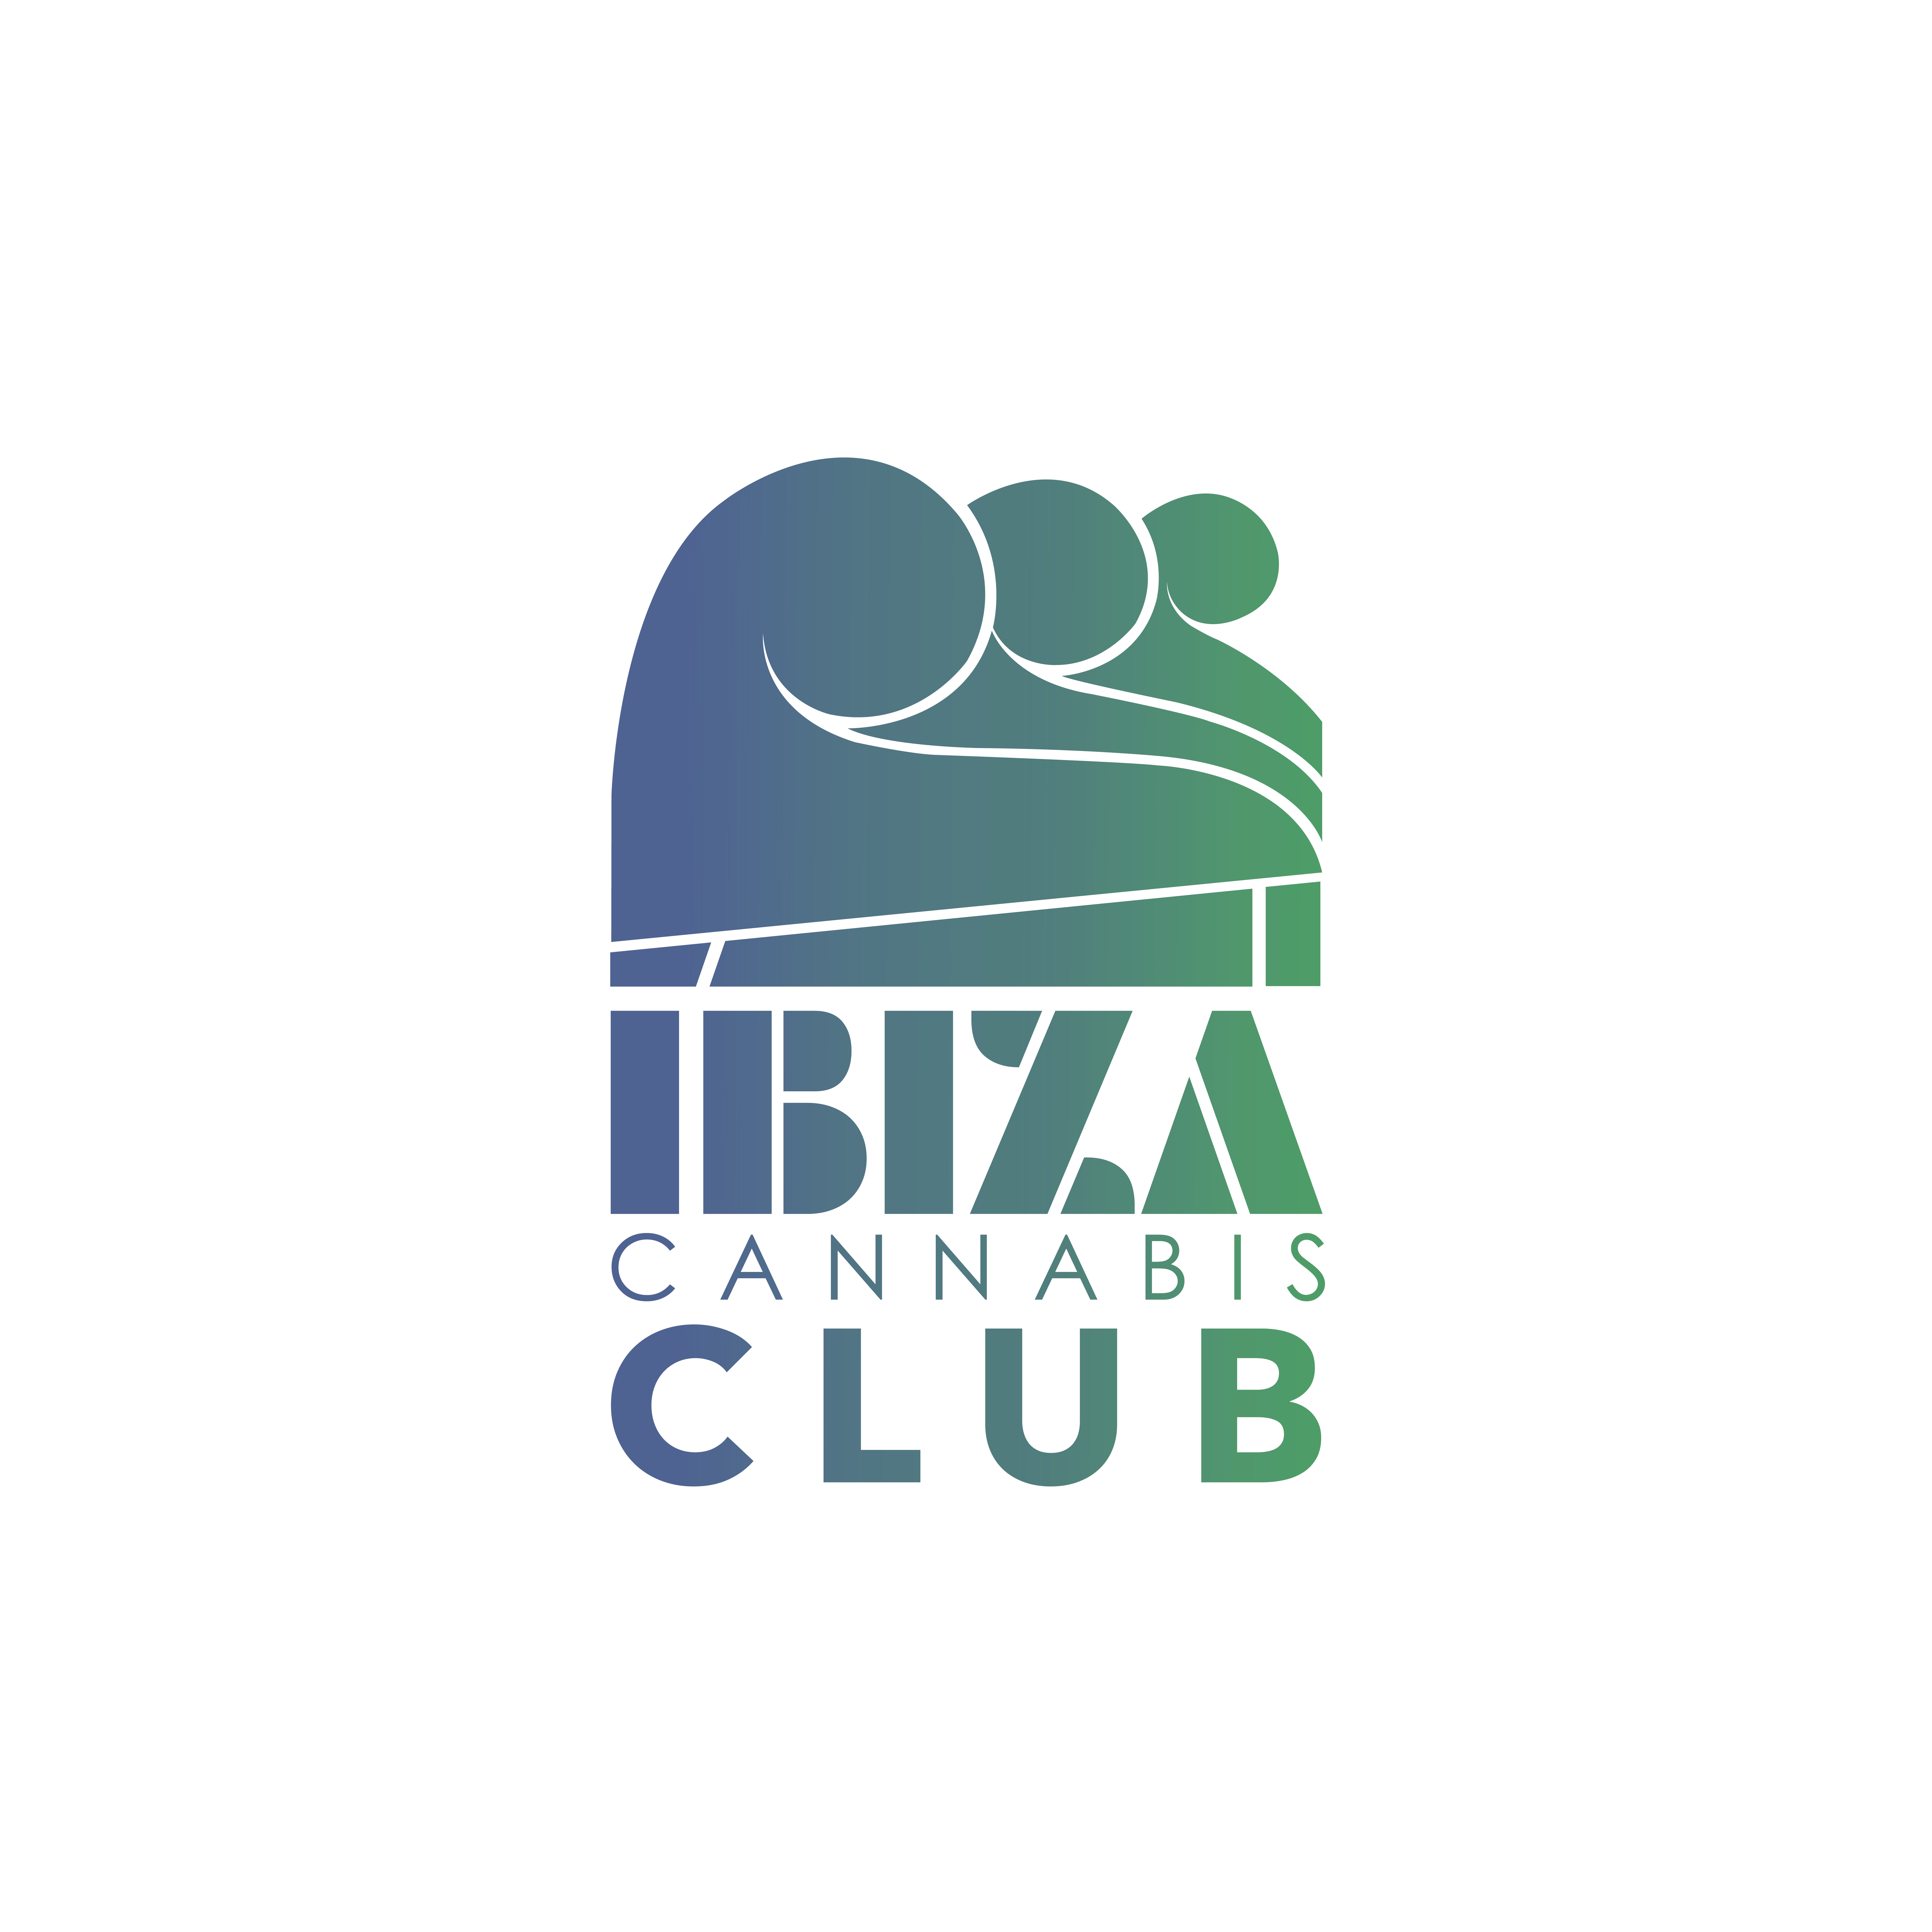 ibiza cannabis club logo